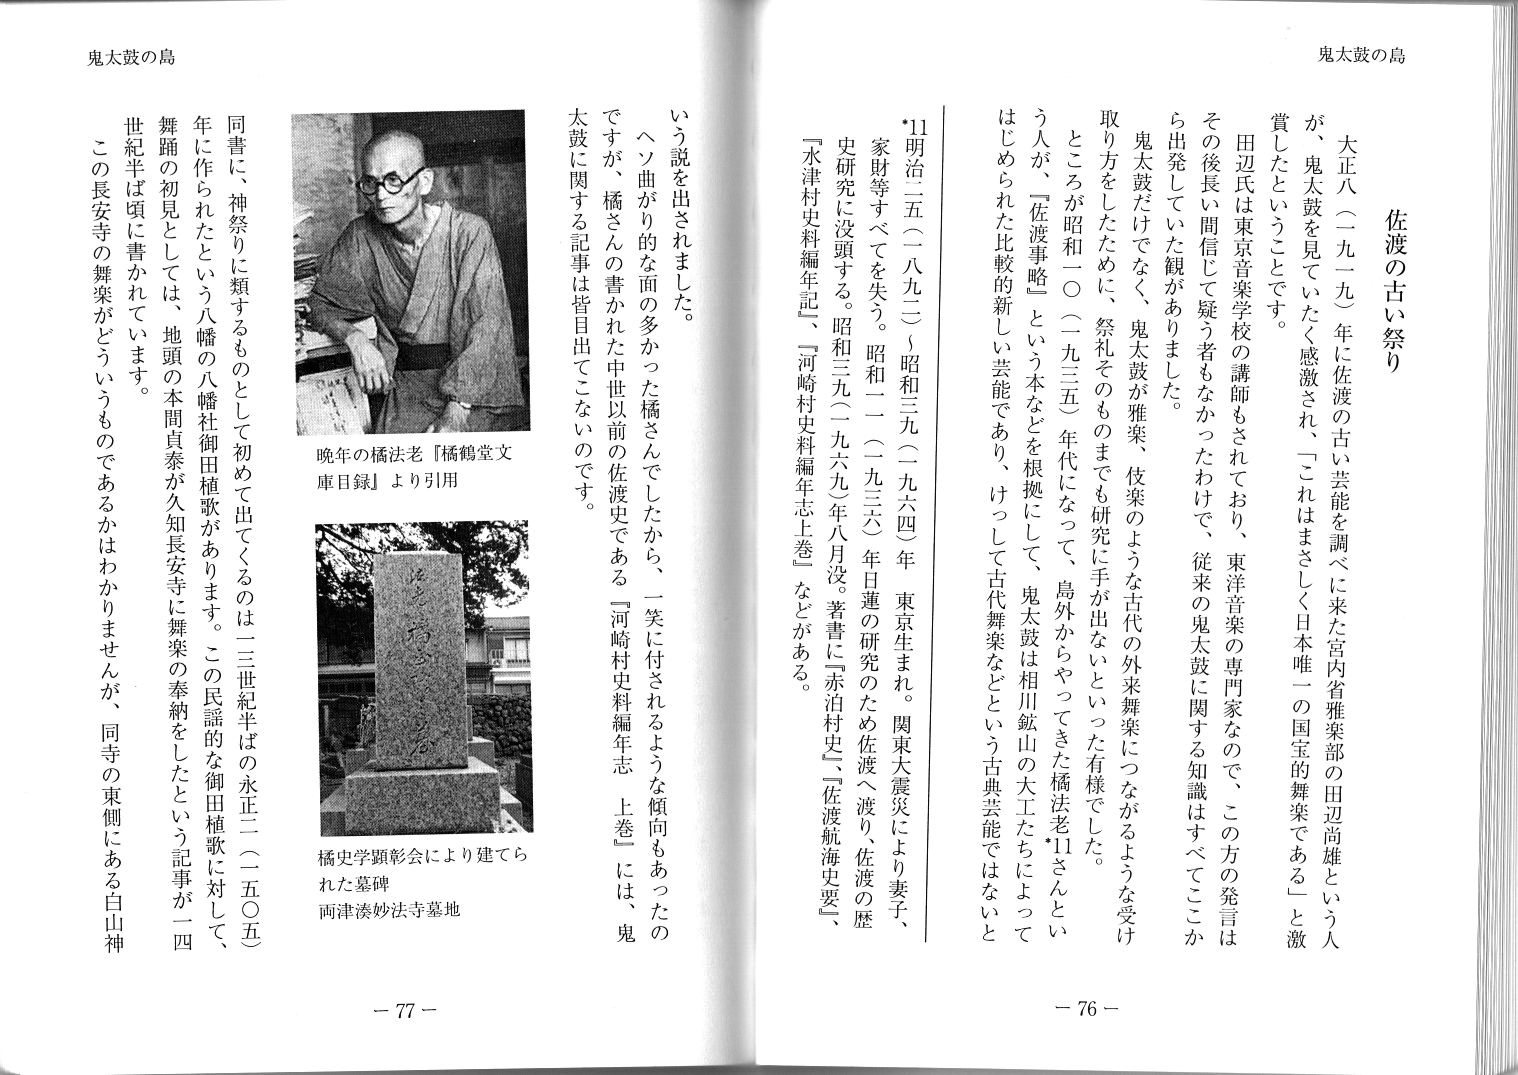 たち橘法老日本海文化研究所報告 第一集 令和元年7月 (1)